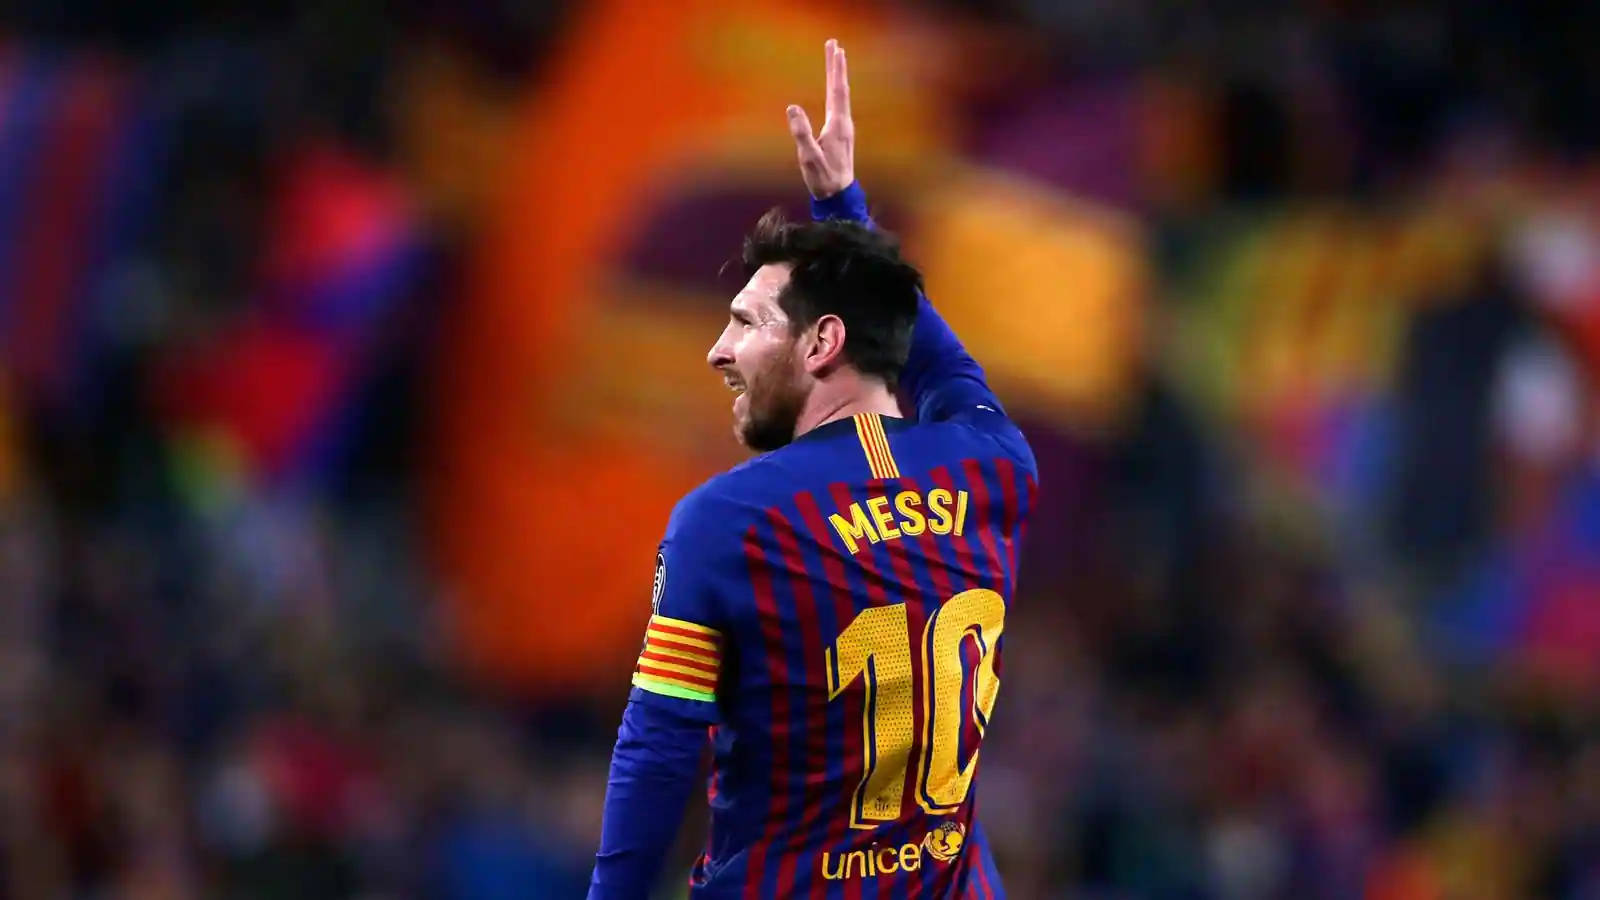 Messi2021 Mano In Alto Sfondo